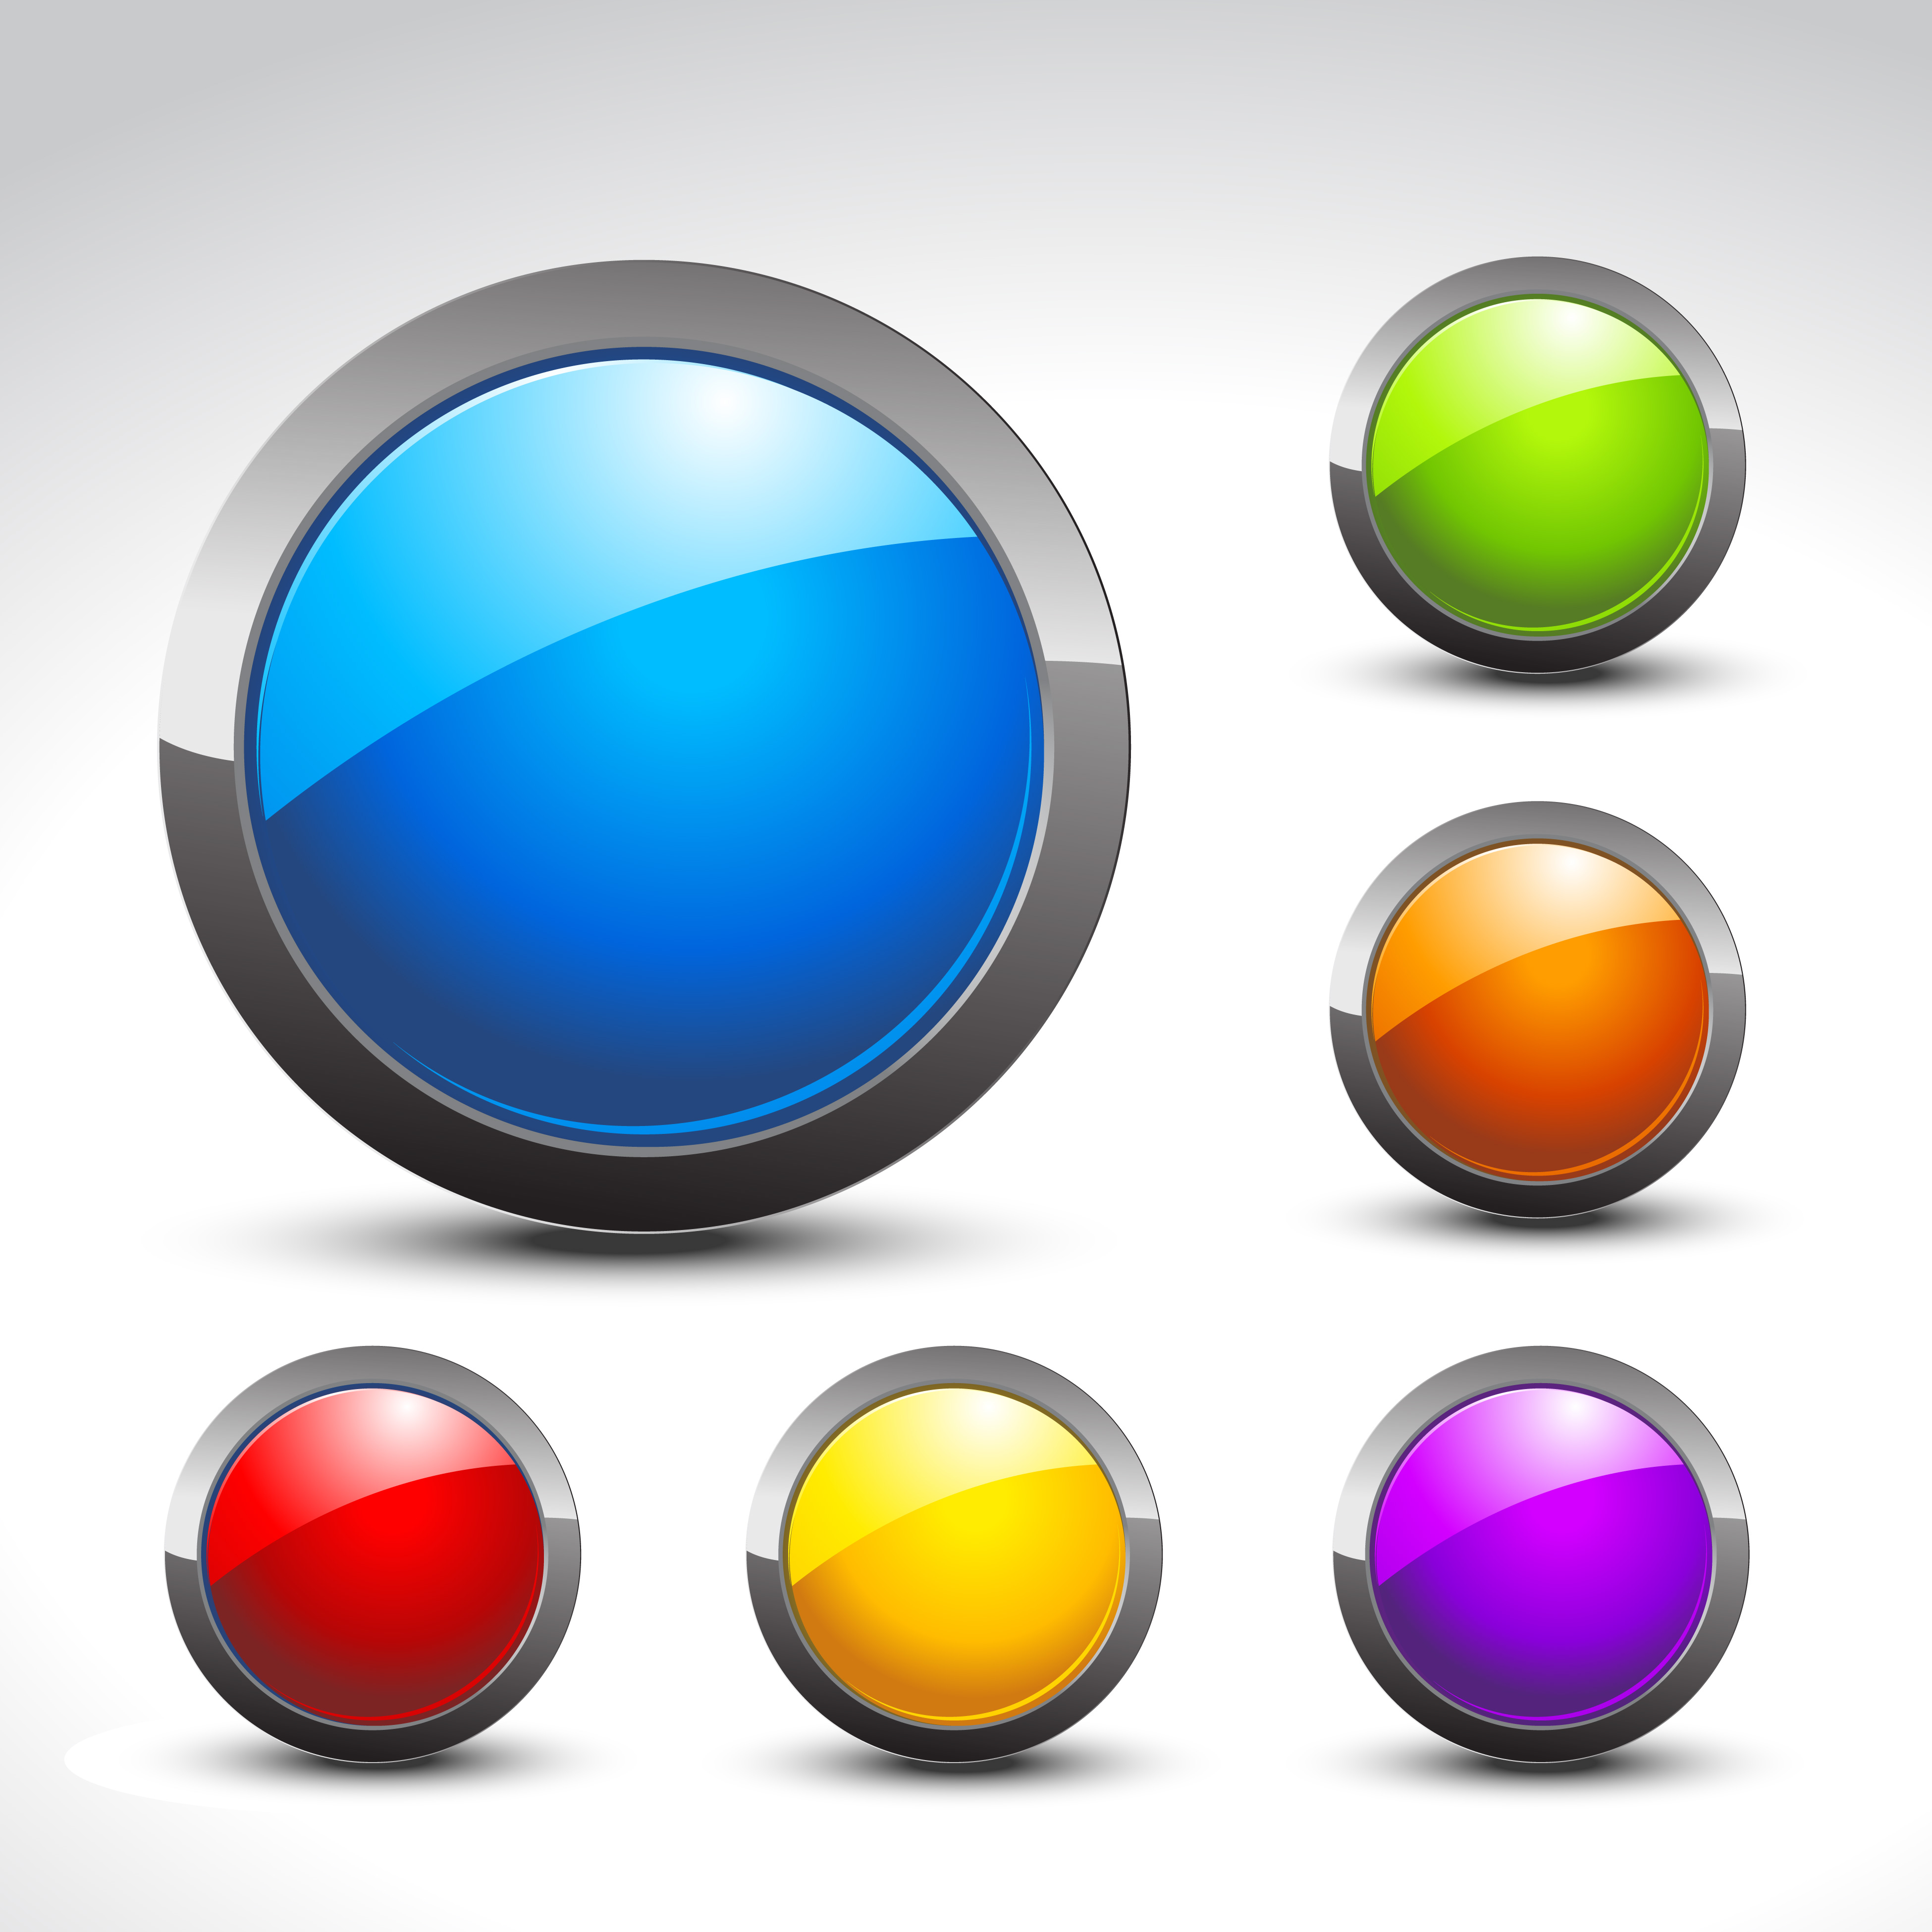 Download shiny button set - Download Free Vectors, Clipart Graphics & Vector Art